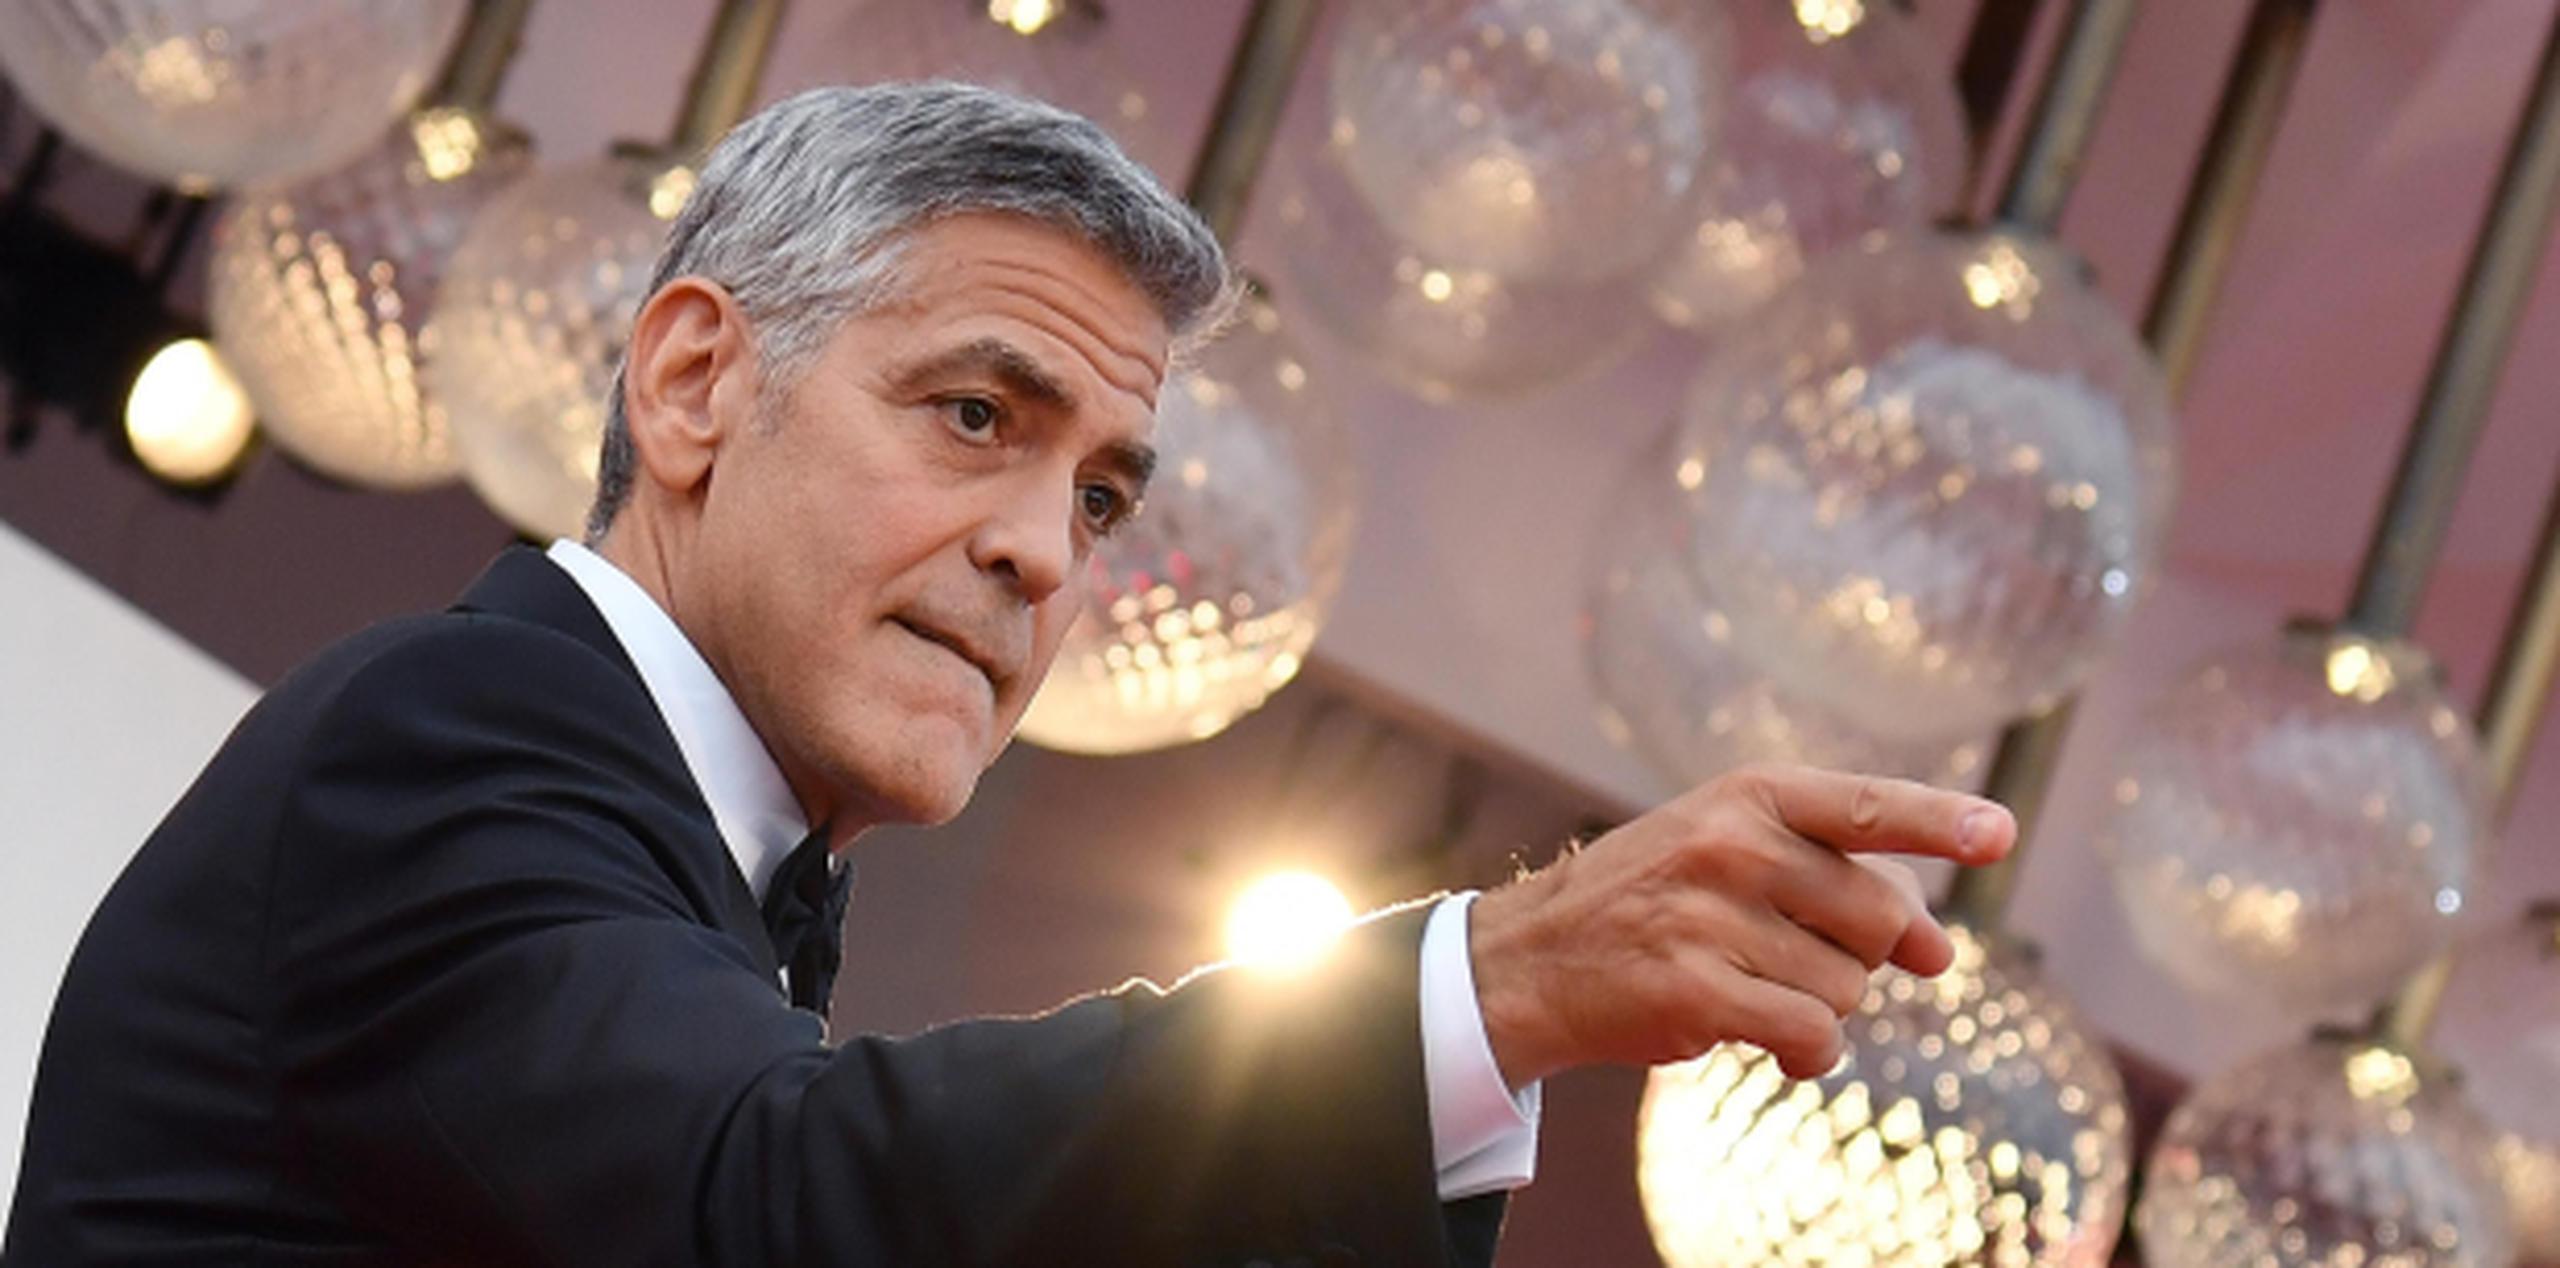 George Clooney presentó este año la cinta "Suburbicon", en la que como director cuenta con un elenco encabezado por Matt Damon, Julianne Moore y Óscar Issac. (EFE / EPA / Ettore Ferrari)